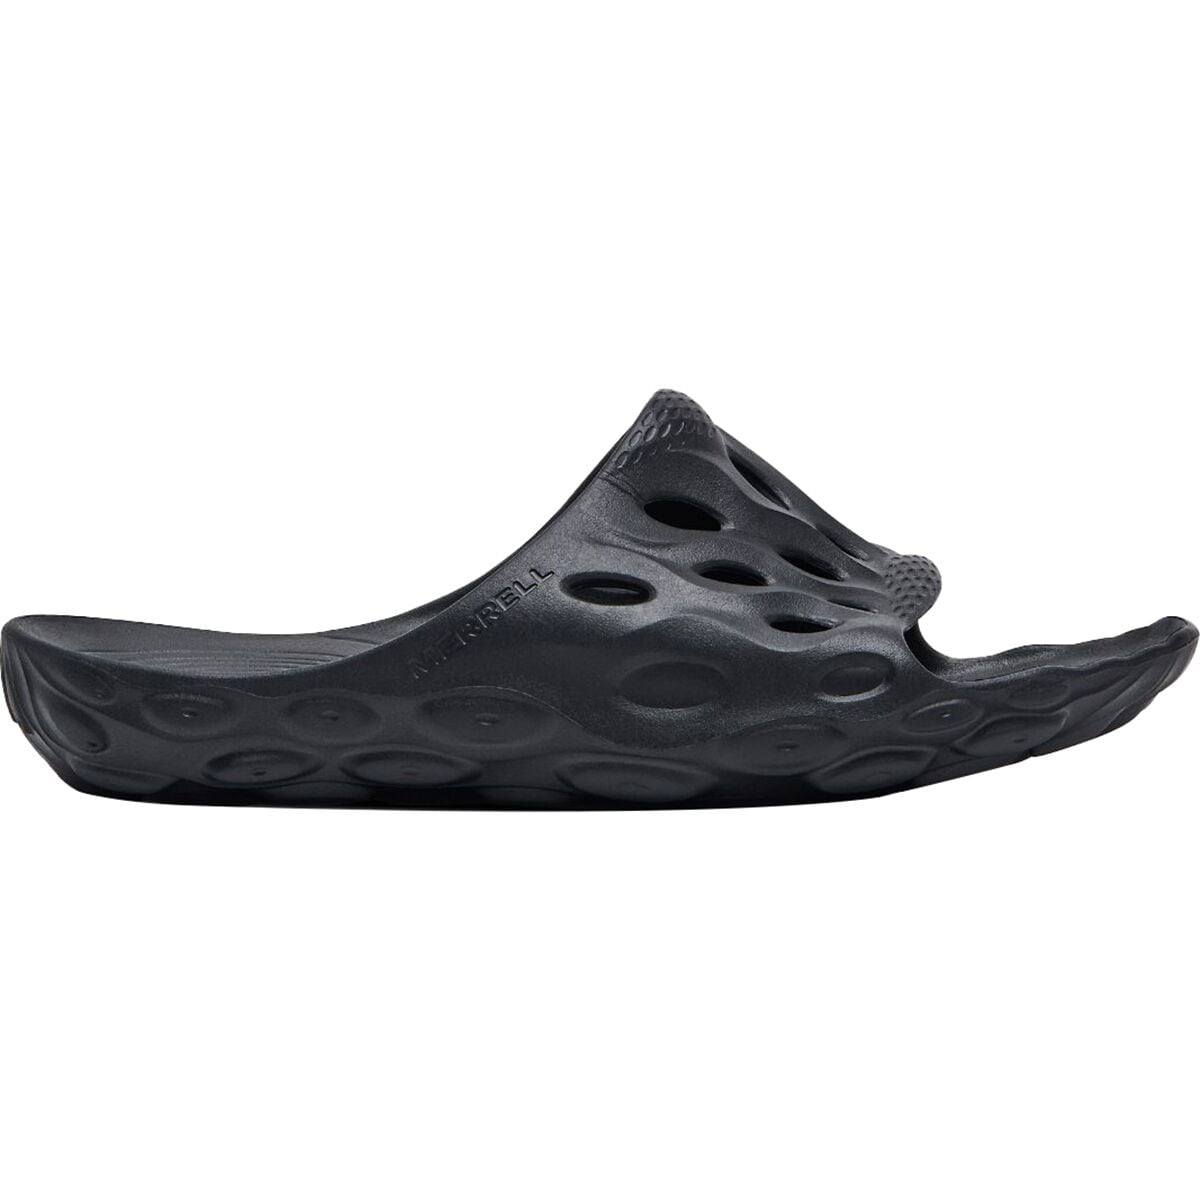 Merrell Hydro Slide Sandal - Men's -